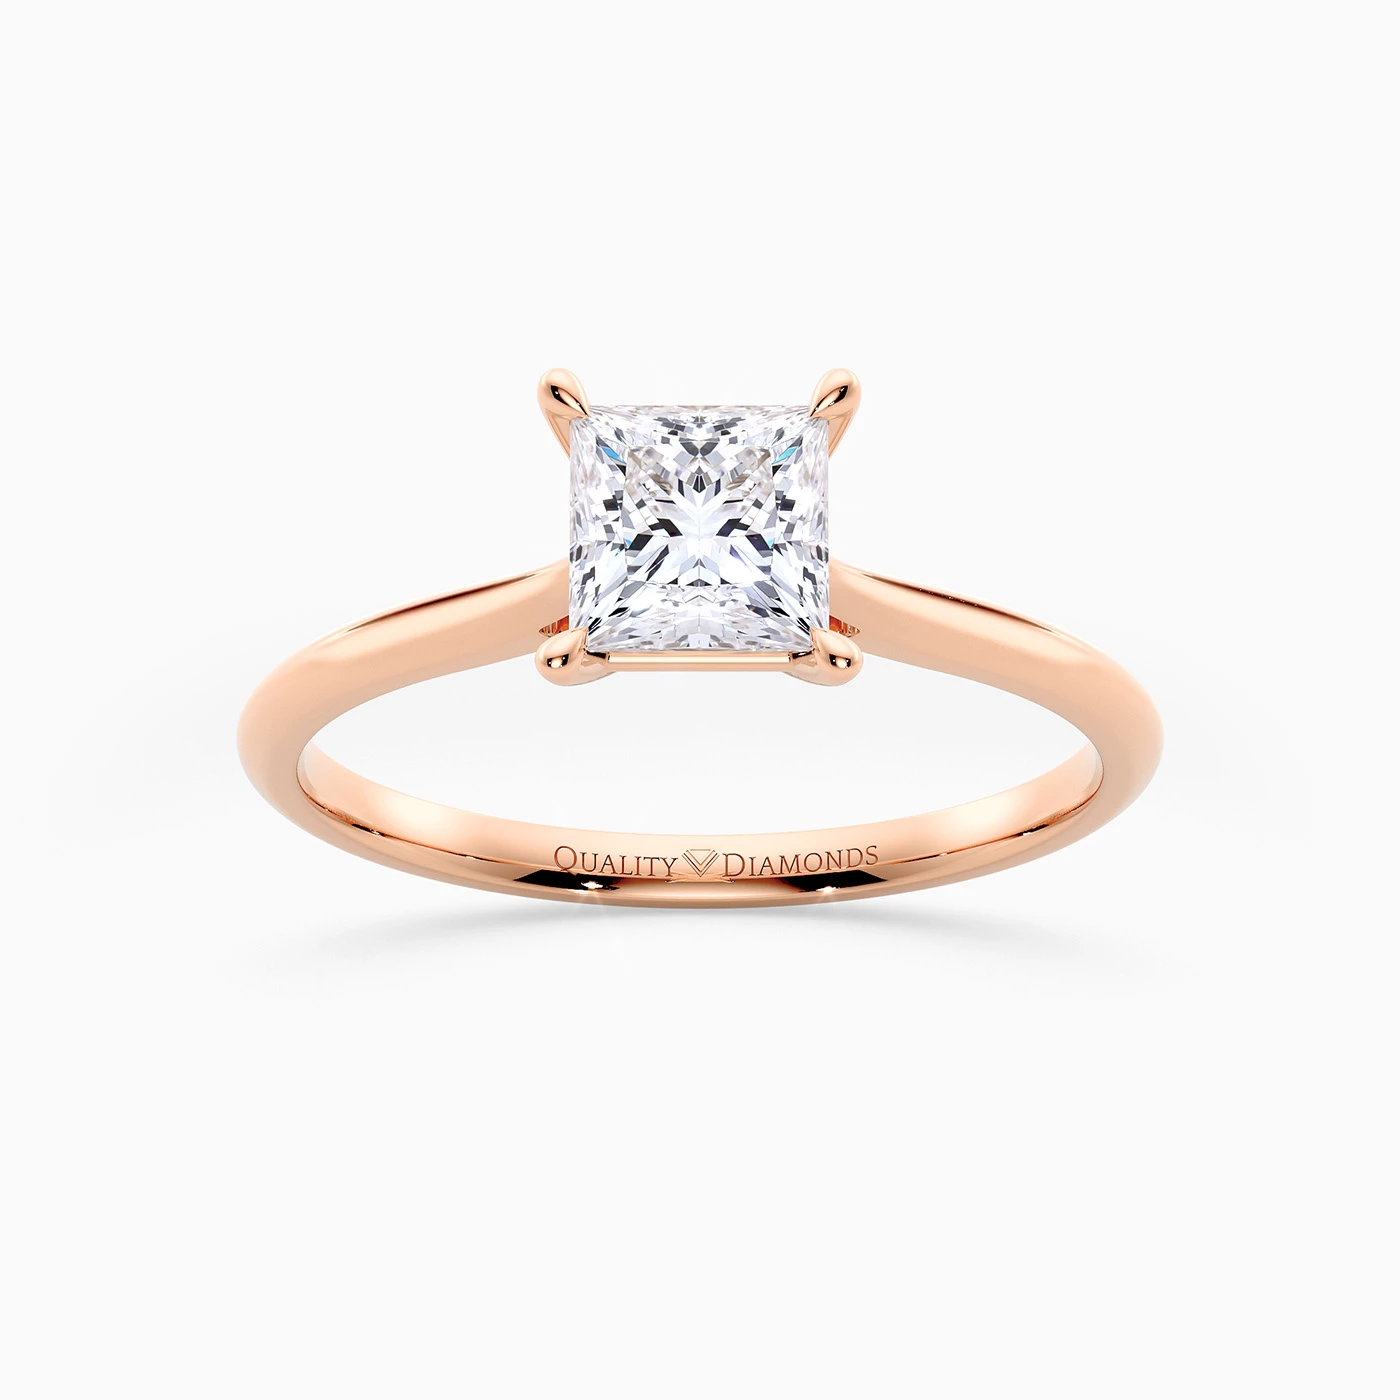 Princess Carys Diamond Ring in 9K Rose Gold